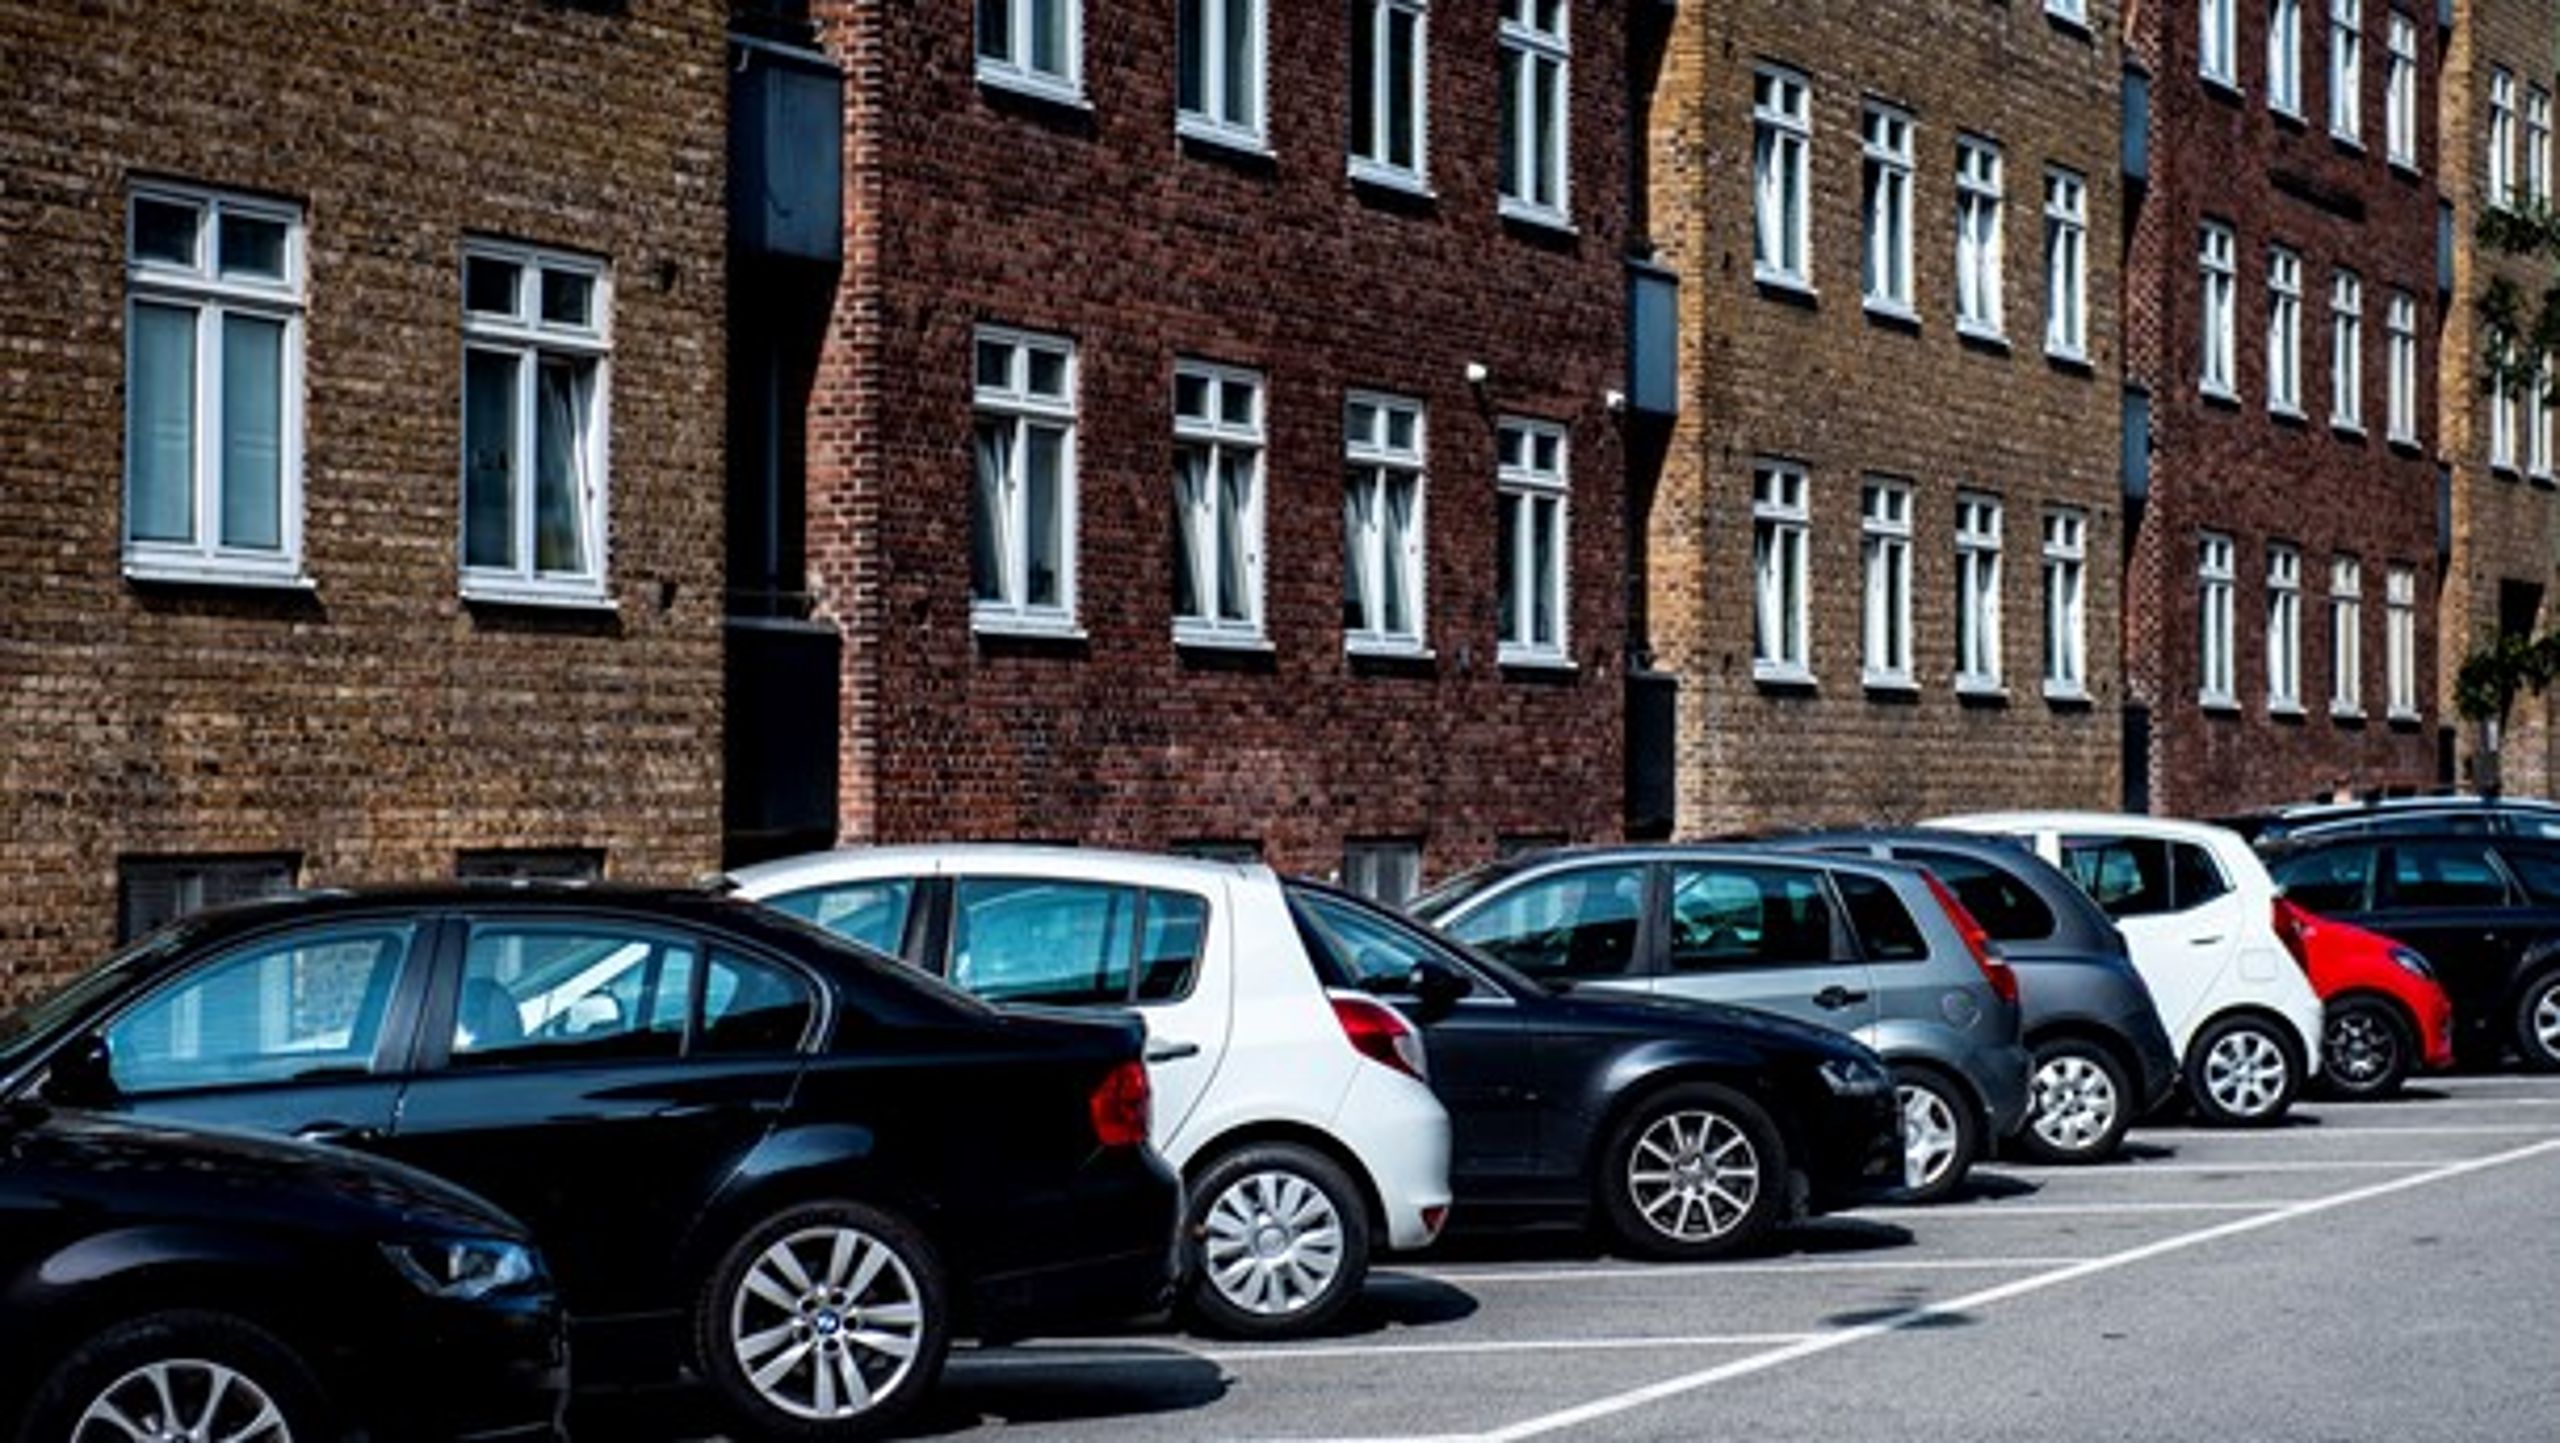 "De rammer helt ved siden af skiven, hvis de vil have endnu færre parkeringspladser i fremtiden," advarer Venstre.